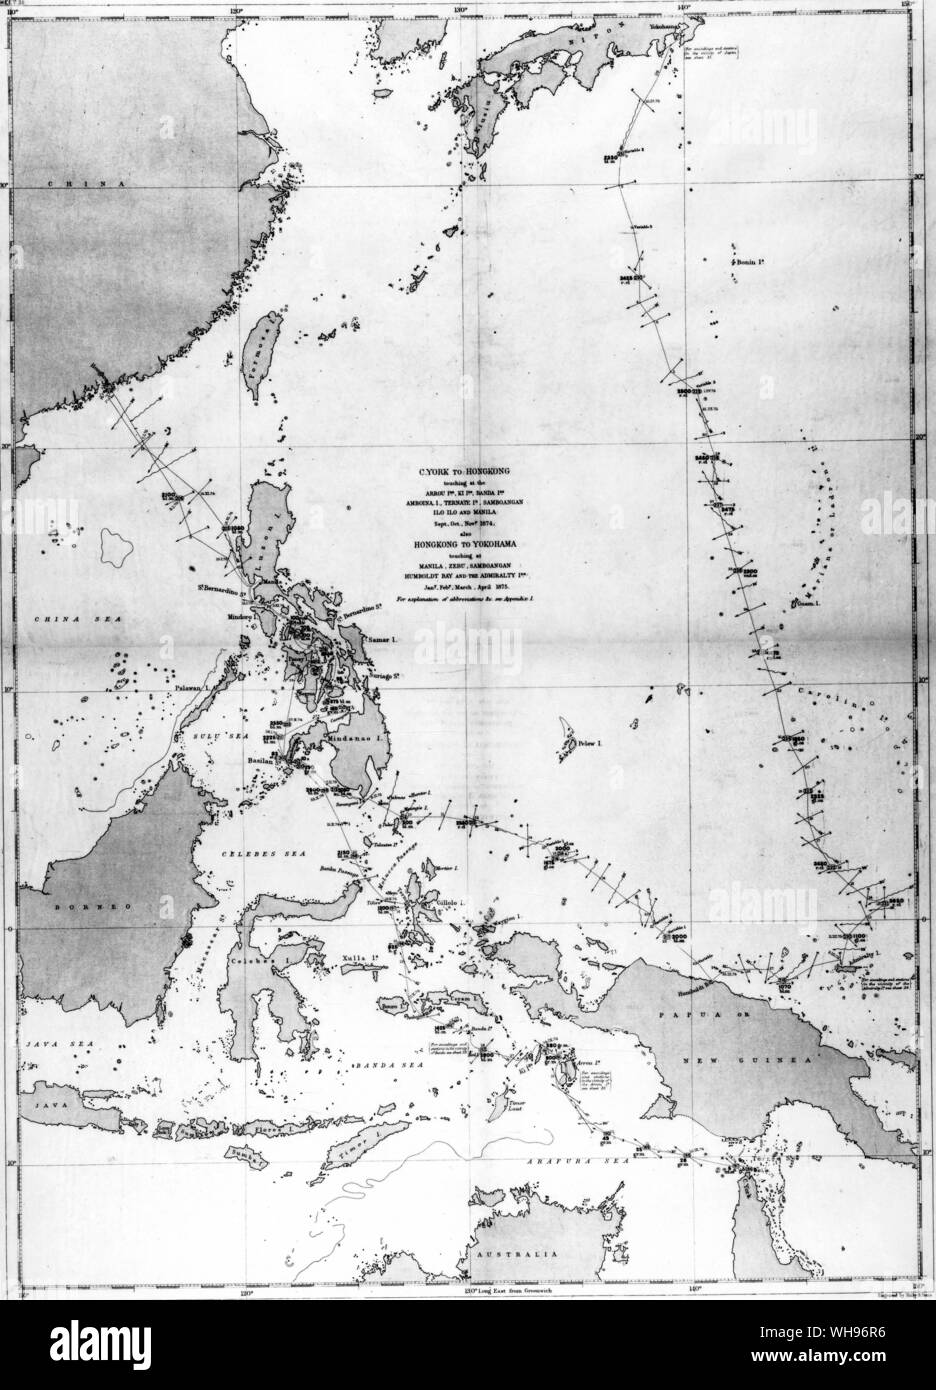 HMS Challenger in corso da Cape York in Giappone. Il suo passaggio attraverso le Filippine è difficile da seguire ma essenzialmente ha intrapreso lo stesso percorso due volte, sul suo modo di Hong Kong. Foto Stock